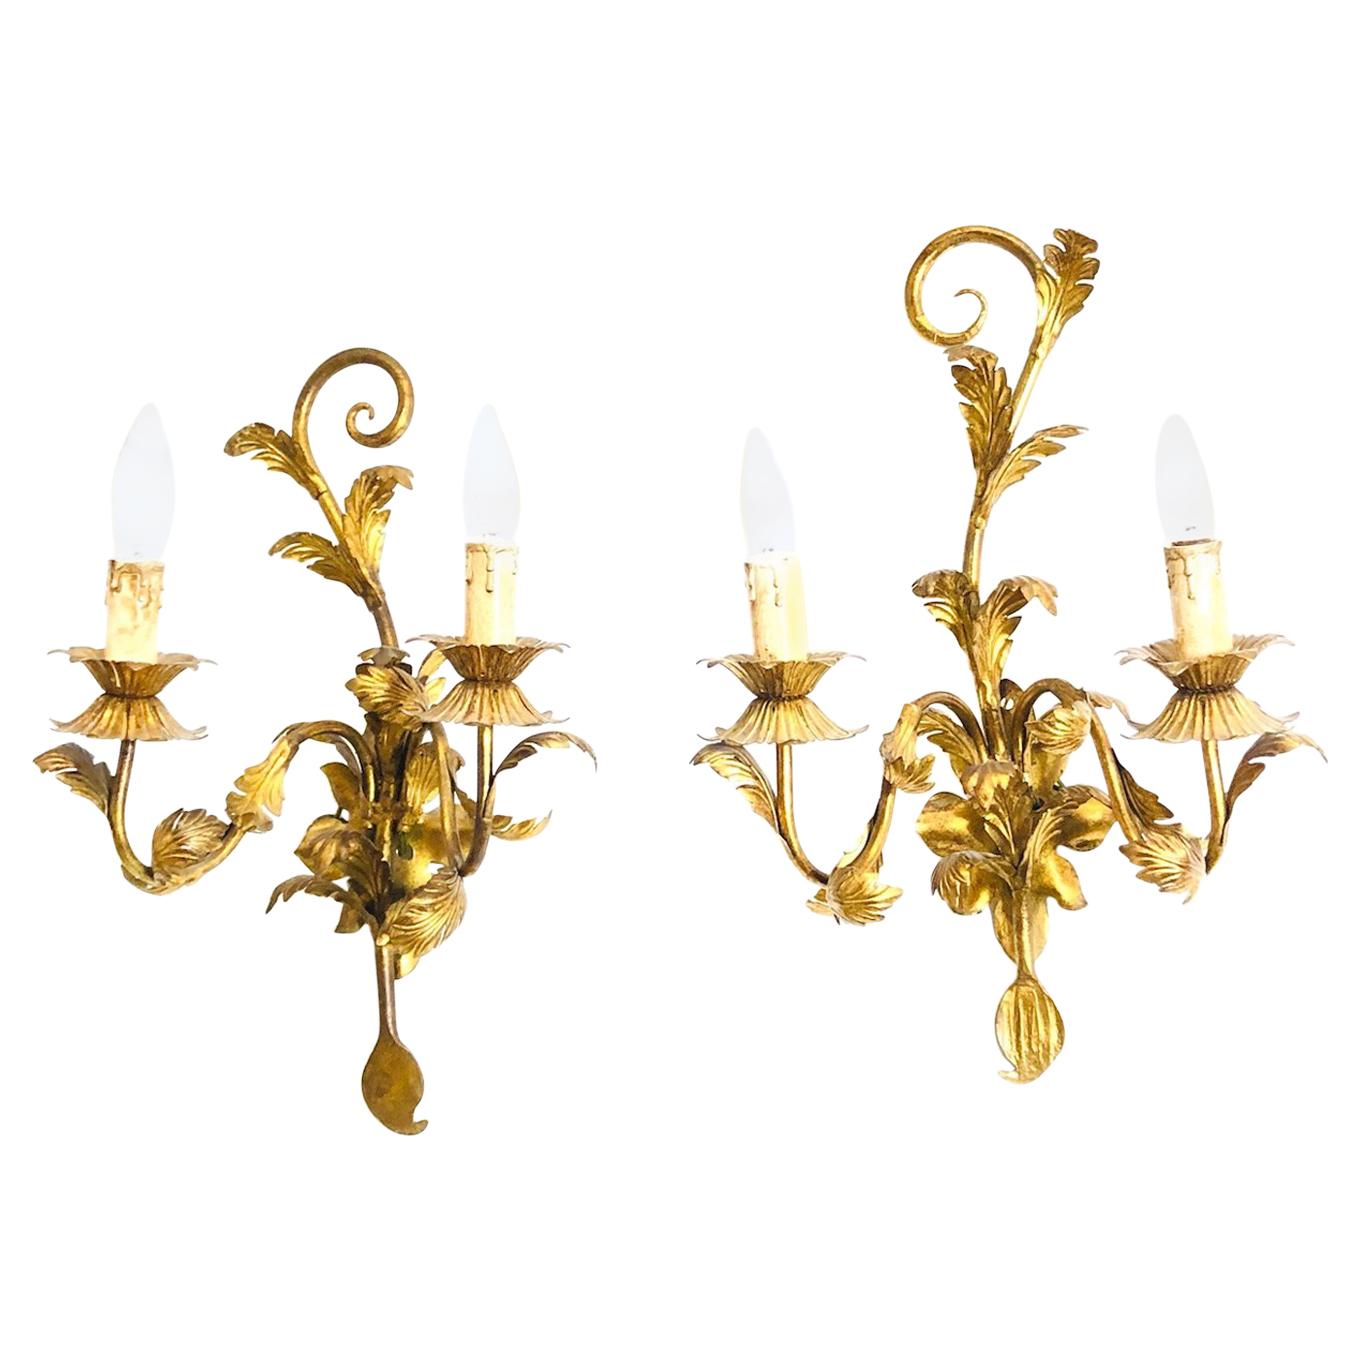 Two-Light Pair of Floral Tole Sconces Gilded Metal, Koegel Kogl Leuchten, 1960s